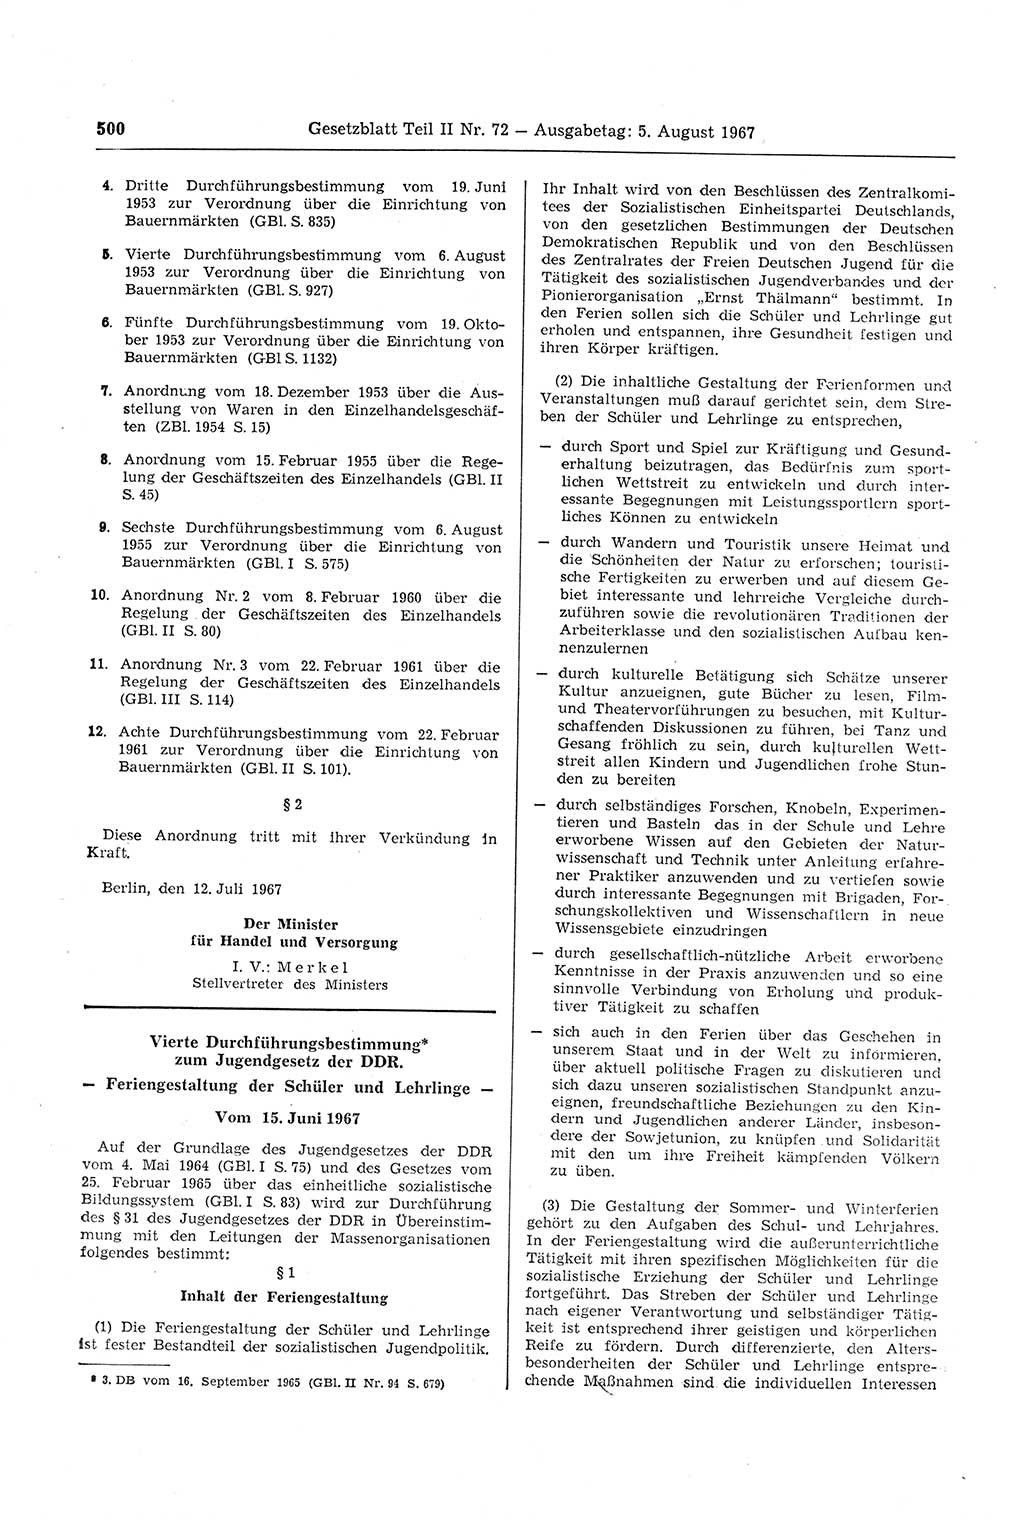 Gesetzblatt (GBl.) der Deutschen Demokratischen Republik (DDR) Teil ⅠⅠ 1967, Seite 500 (GBl. DDR ⅠⅠ 1967, S. 500)